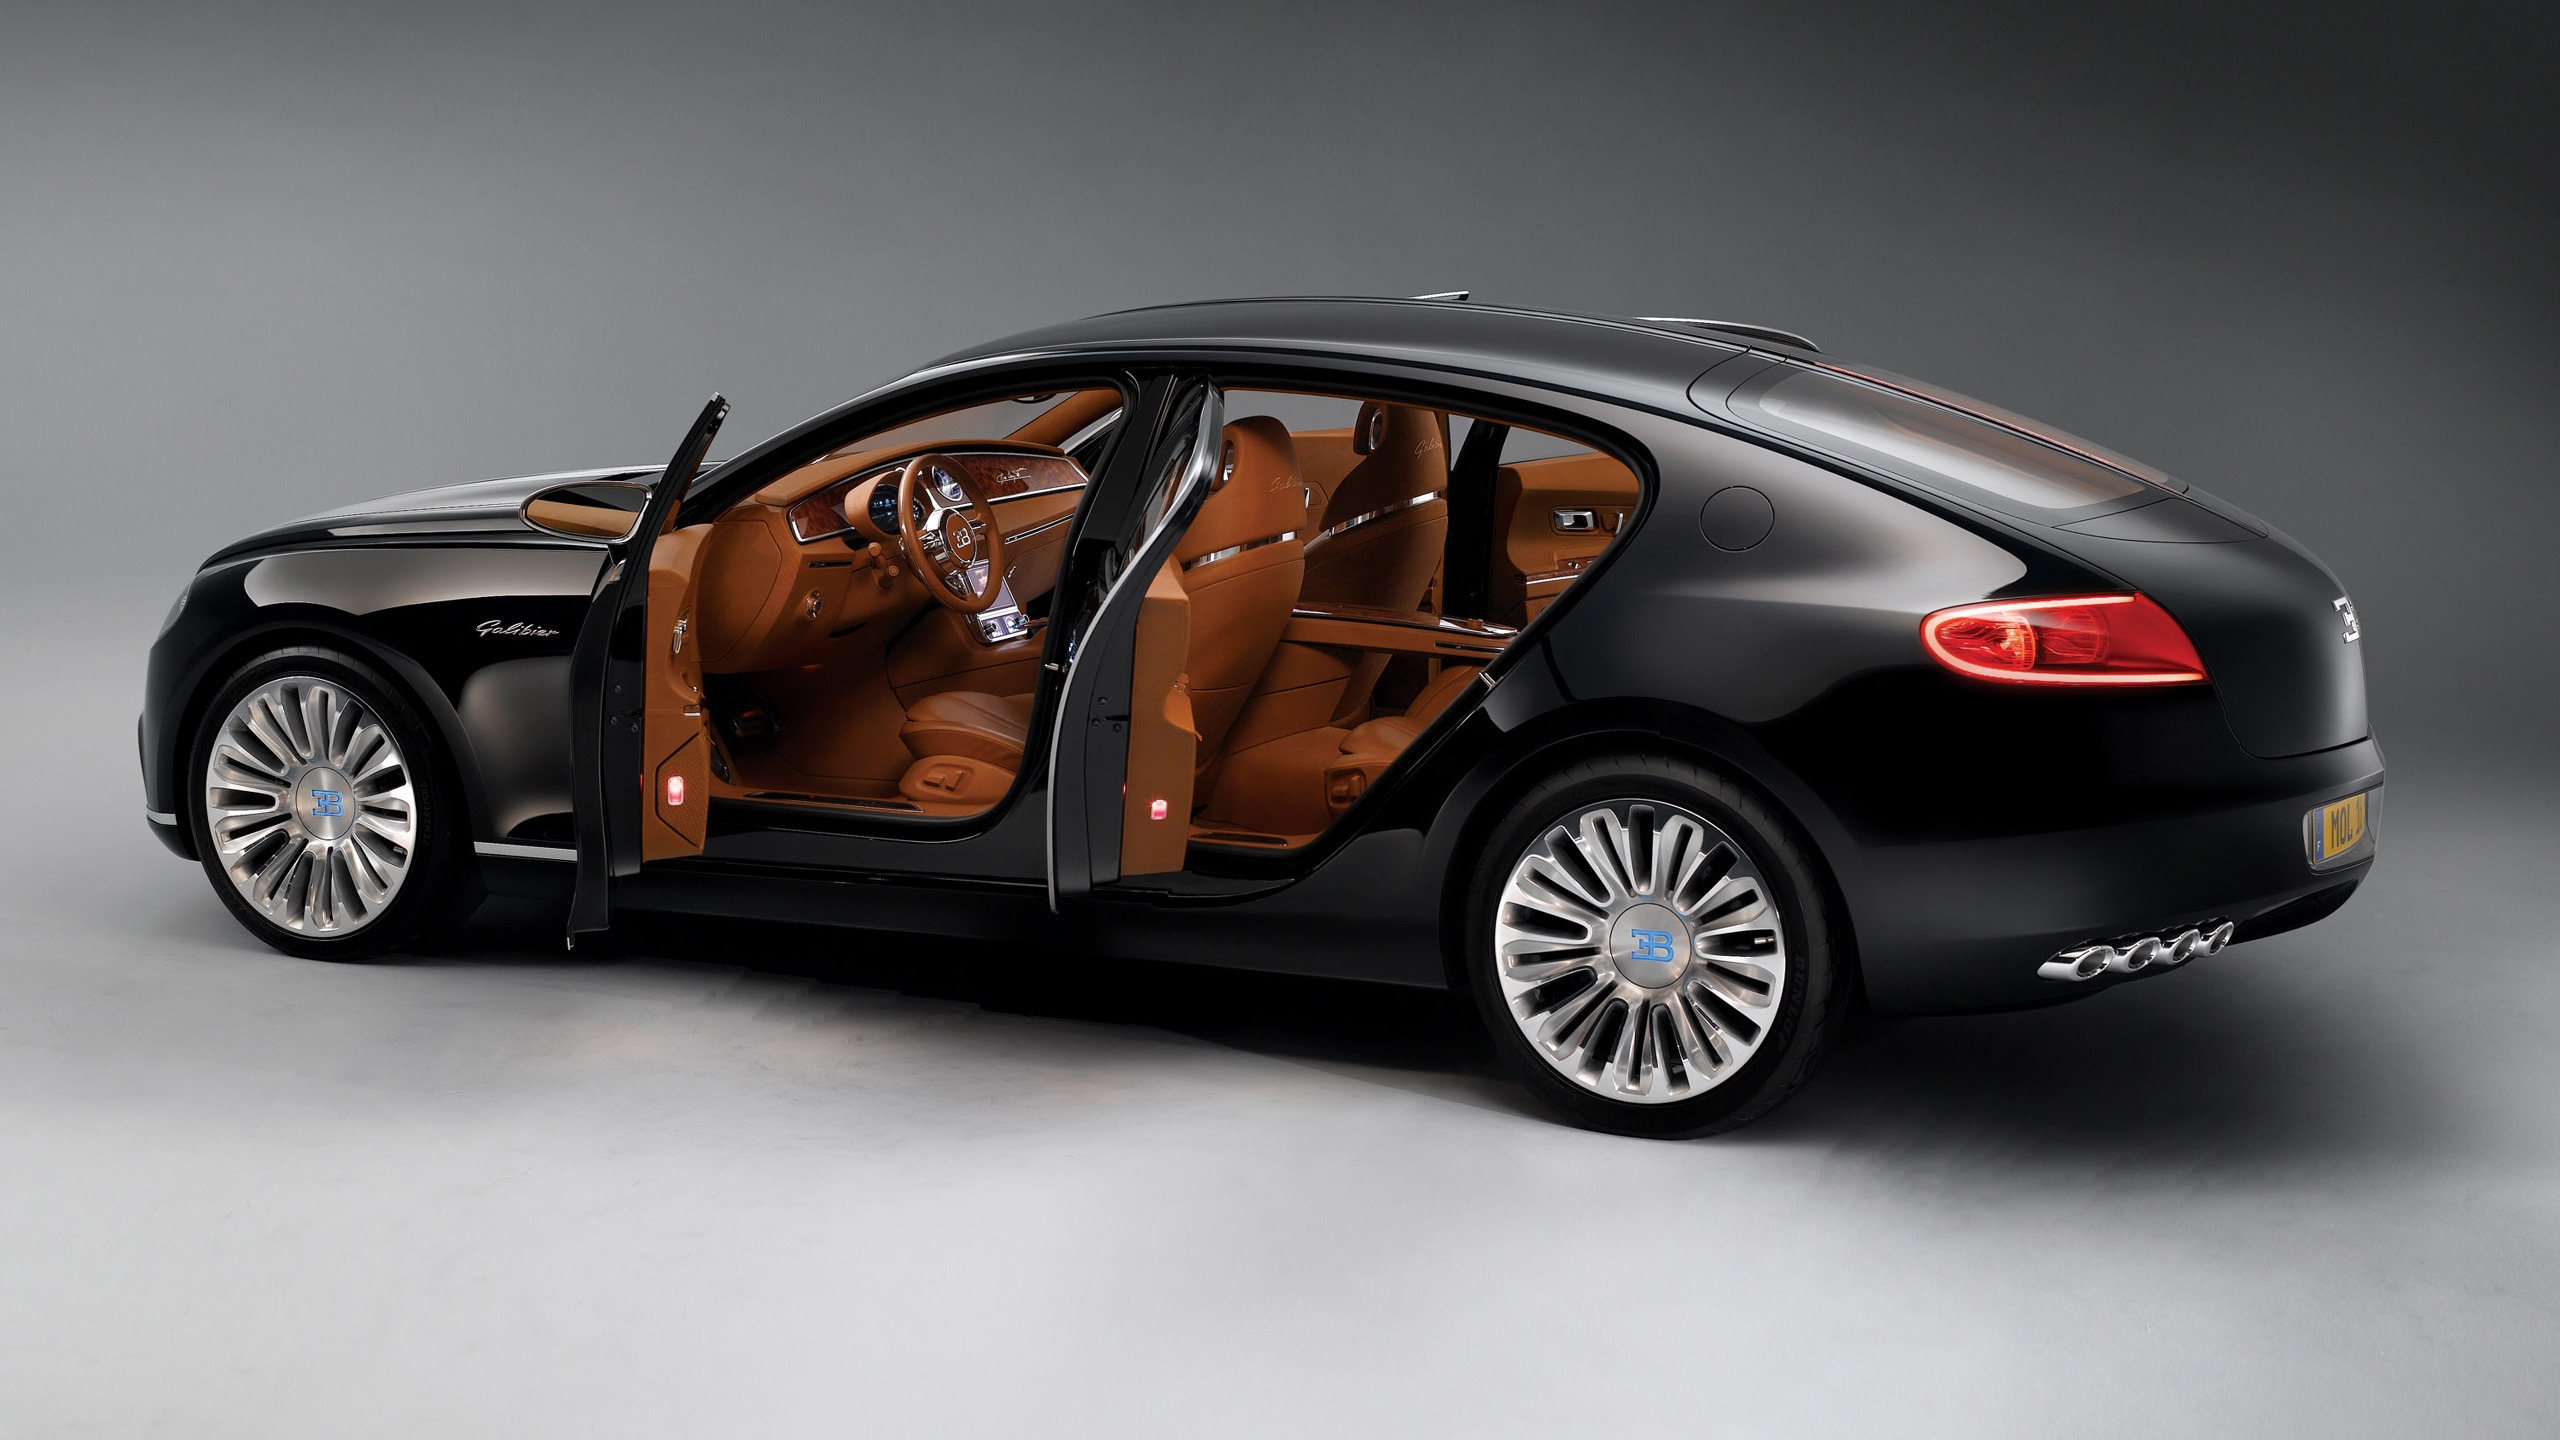 Bugatti 16C Galibier Concept for 2560x1440 HDTV resolution